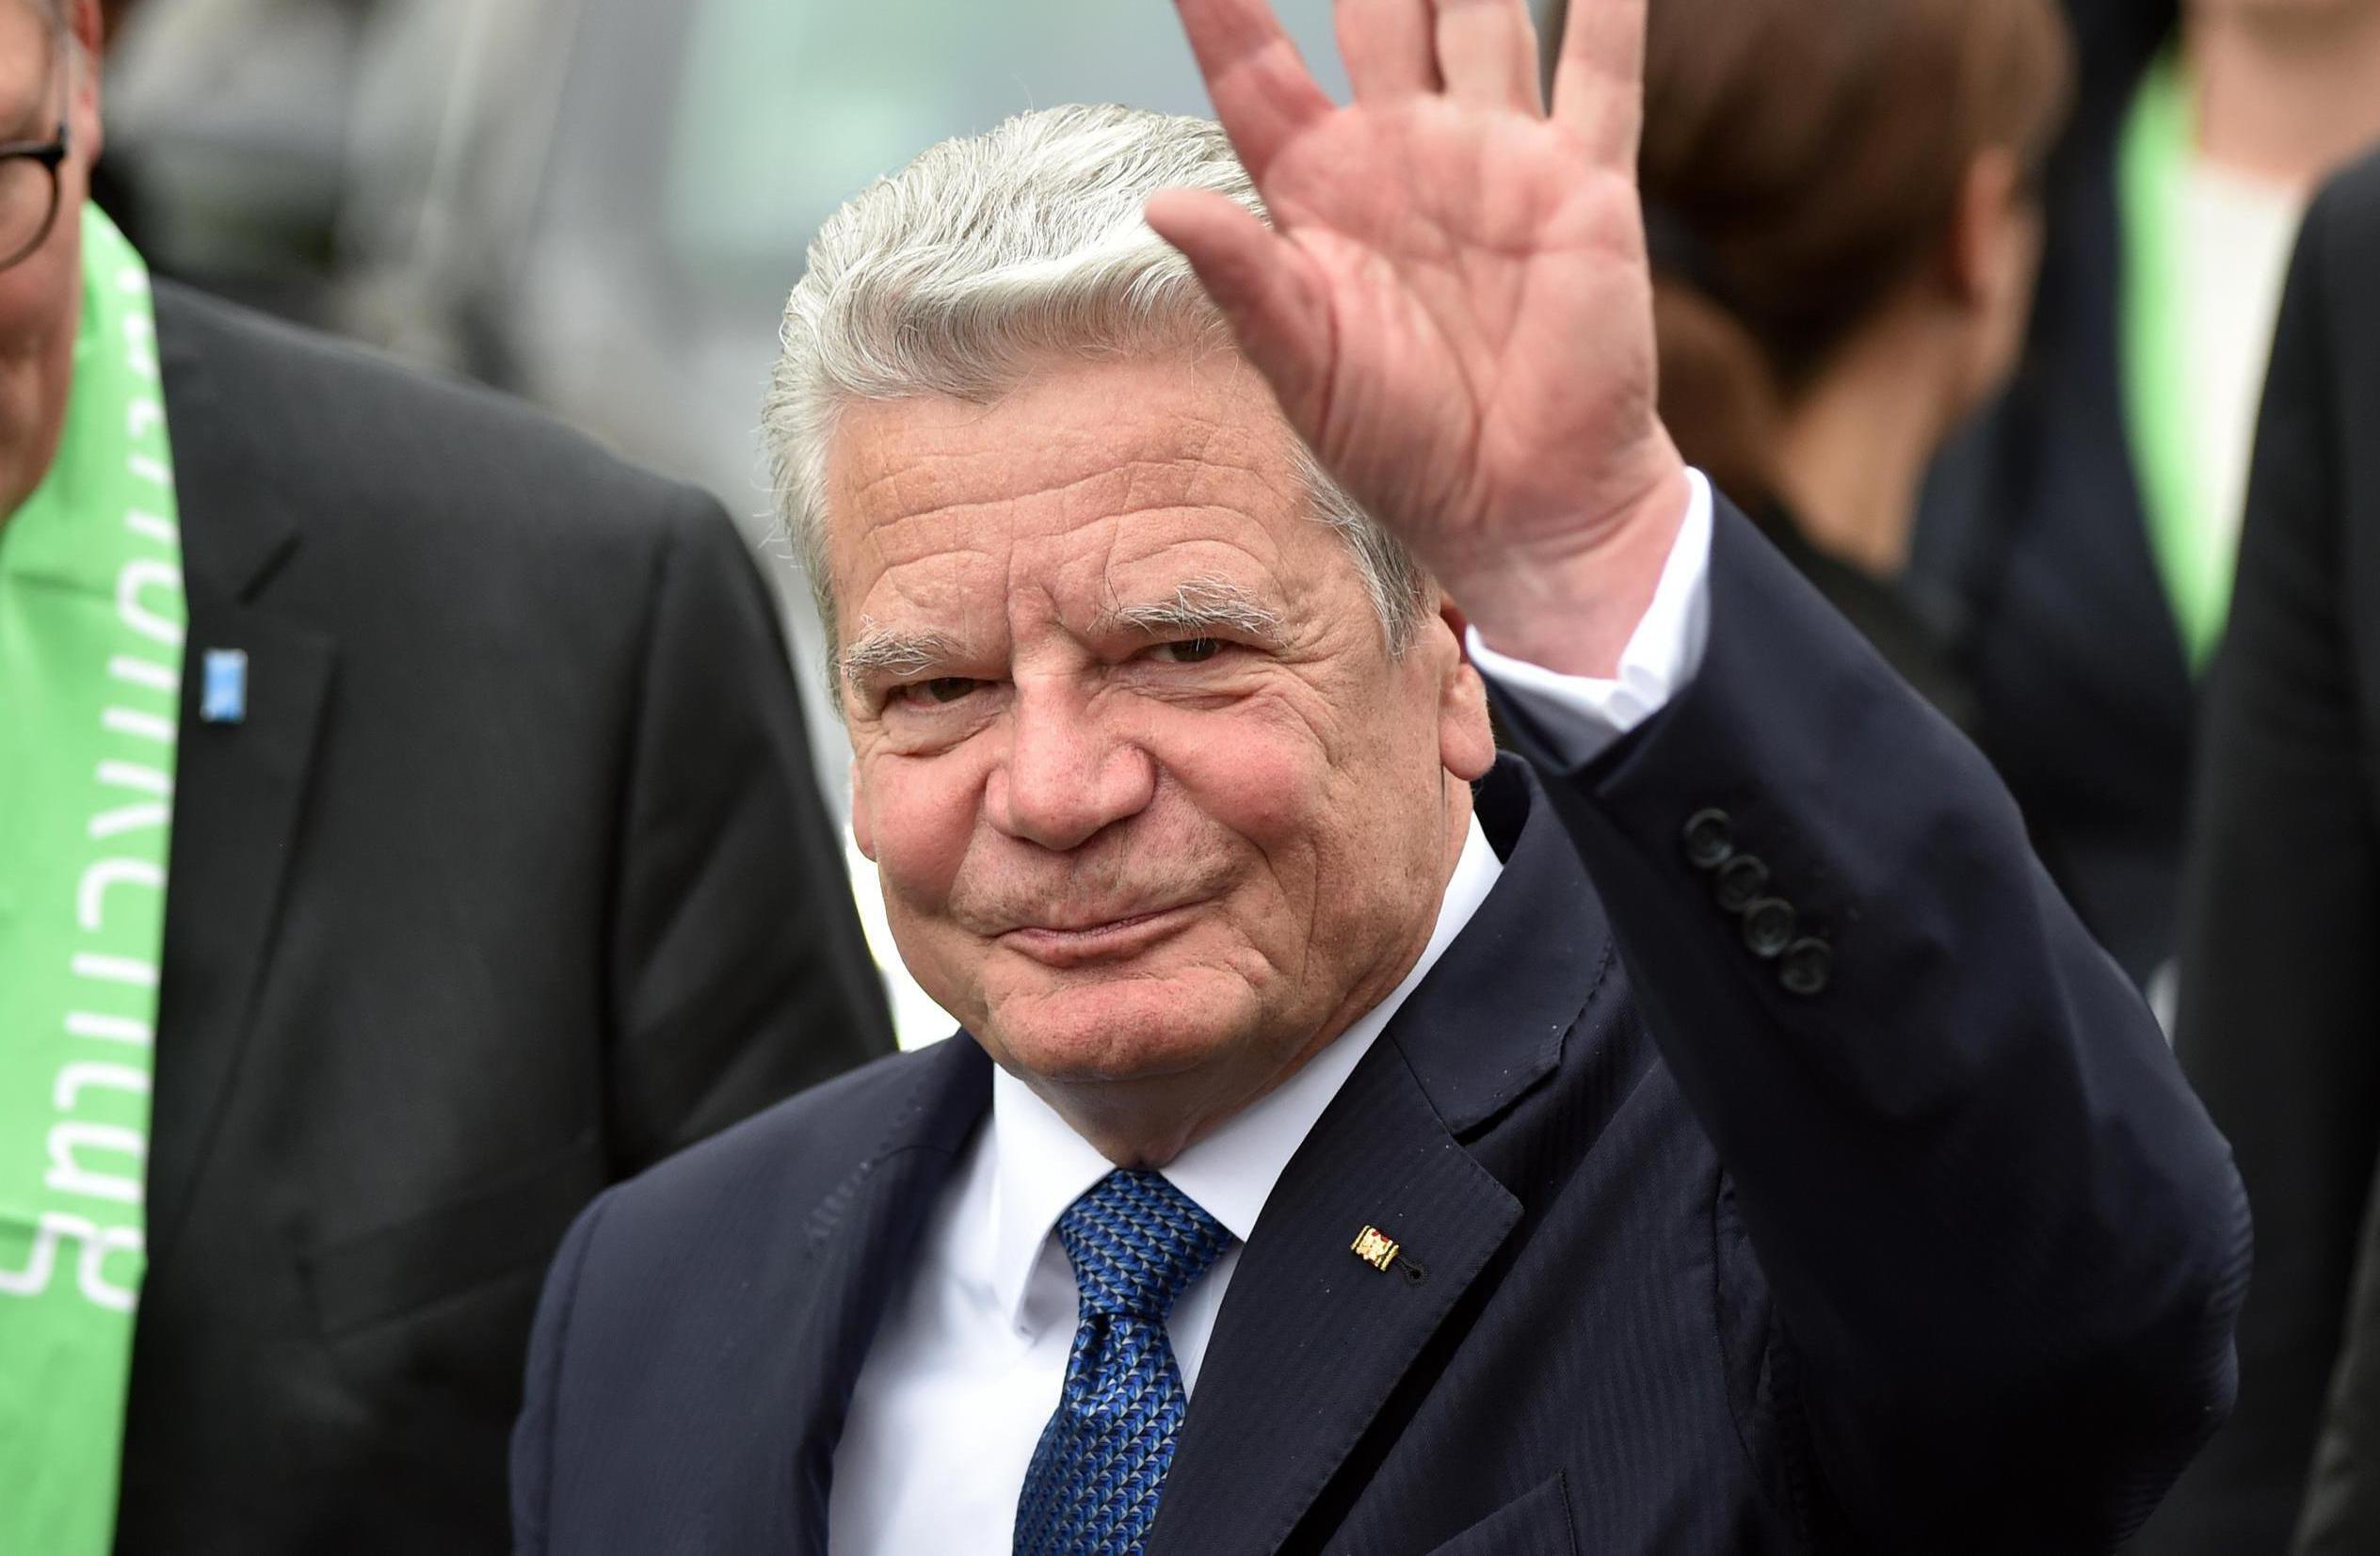 Le président allemand Gauck renonce à un second mandat